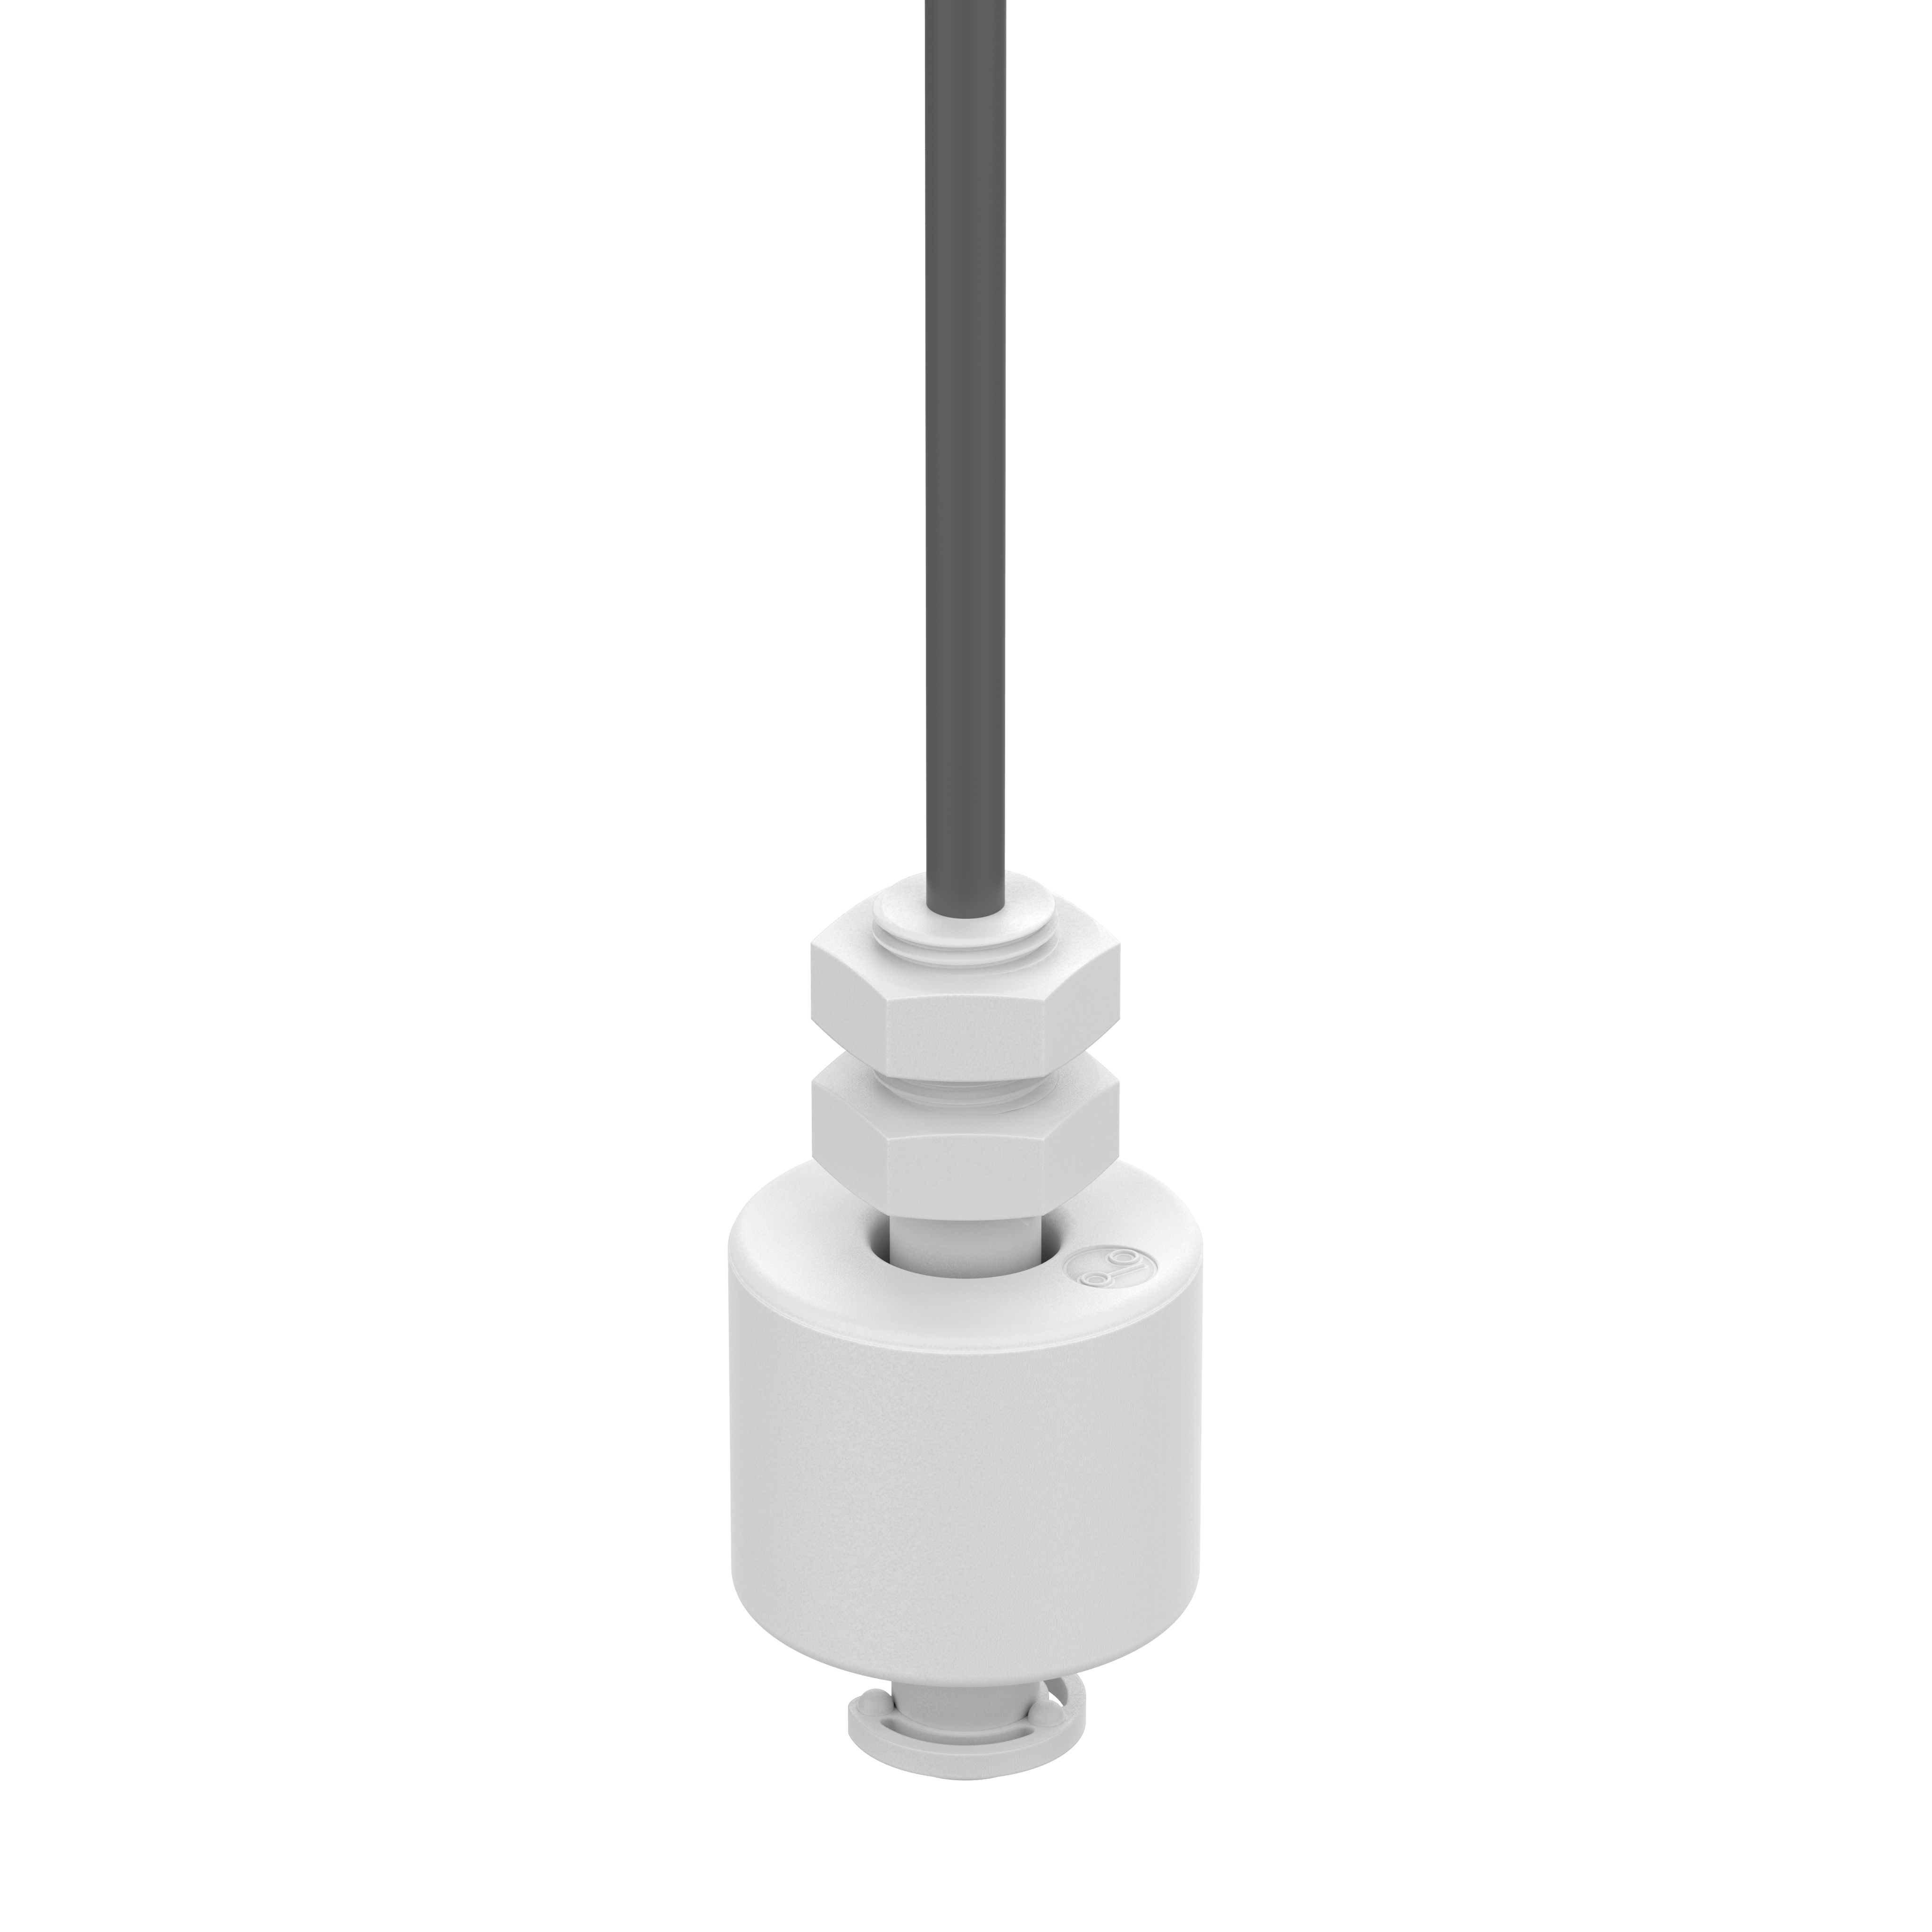 Miniatur Schwimmerschalter - 20301202-5 - Schließer, 230V, PP, Gewinde PG1/8, 5m Kabel